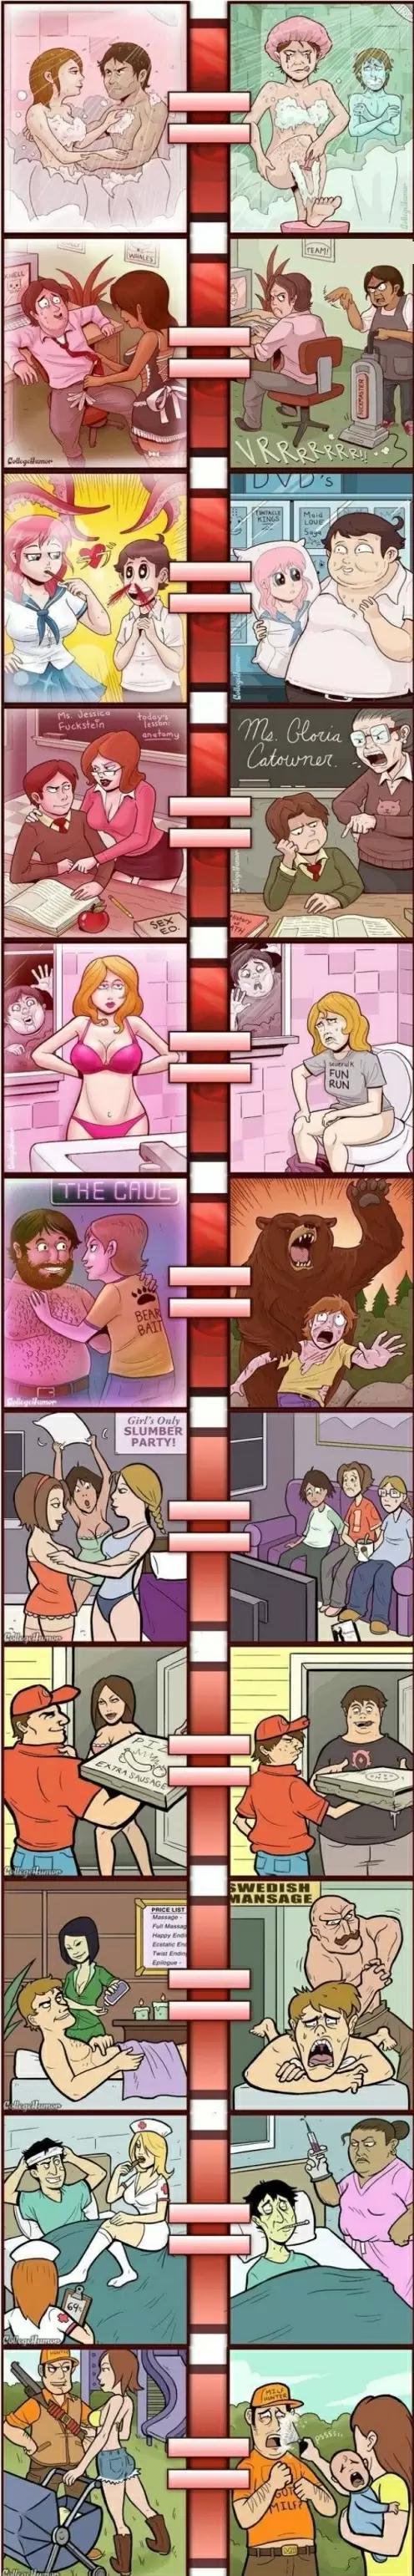 porno vs realidade - meme